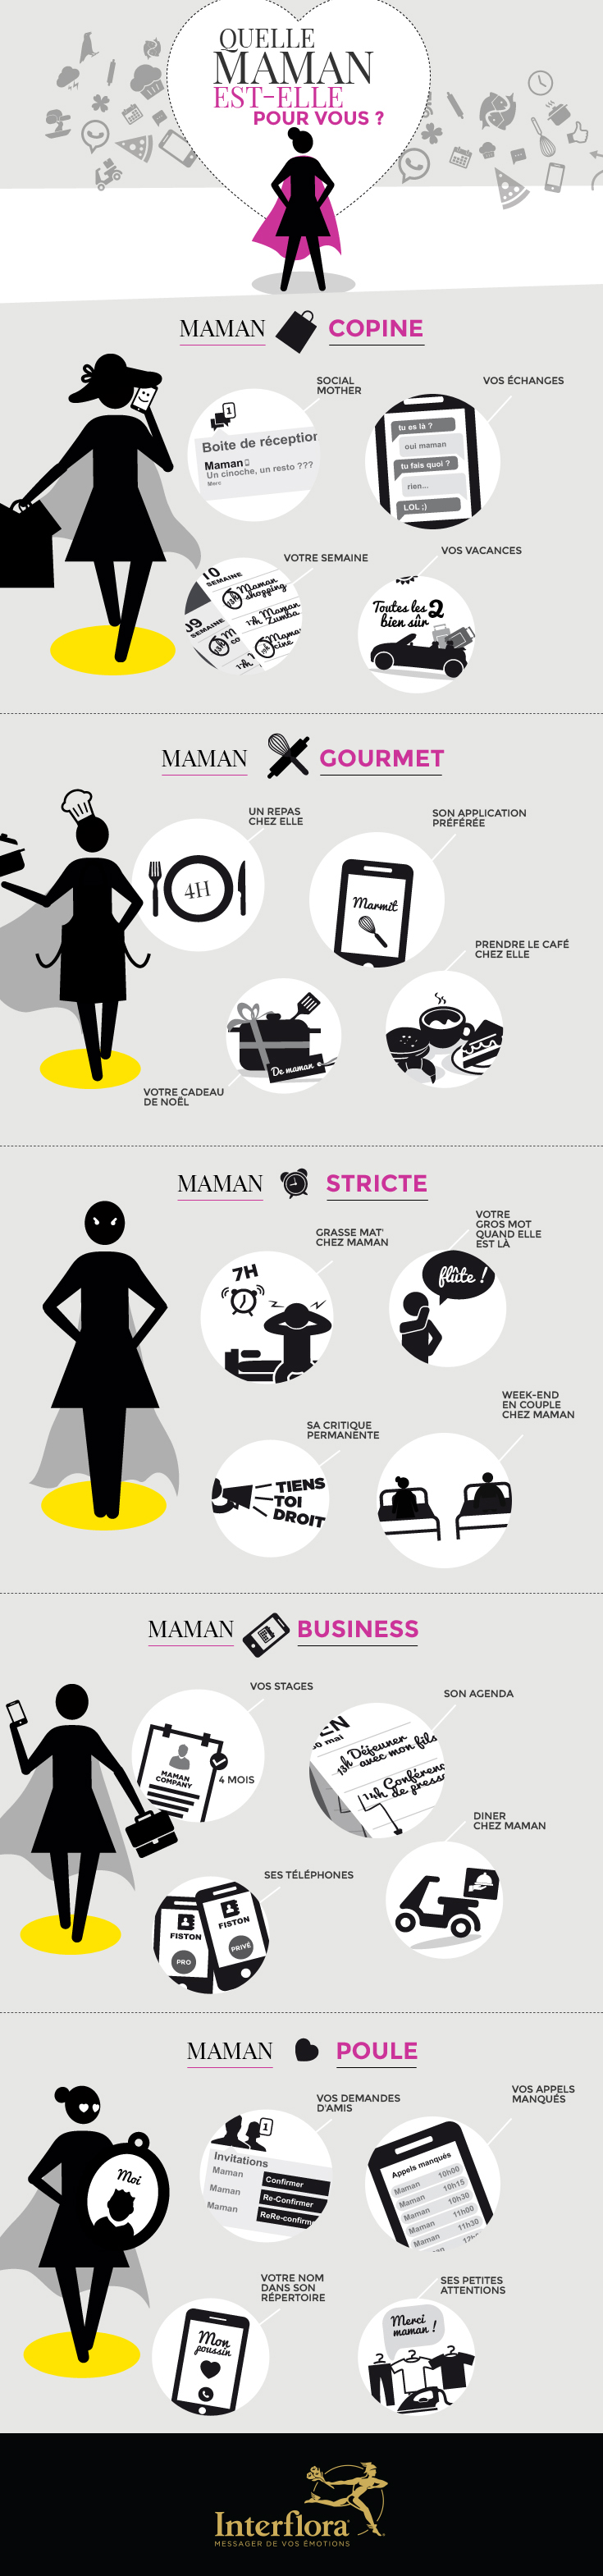 infographie fête des mères 2015 : Quelle Maman est-elle pour vous ?